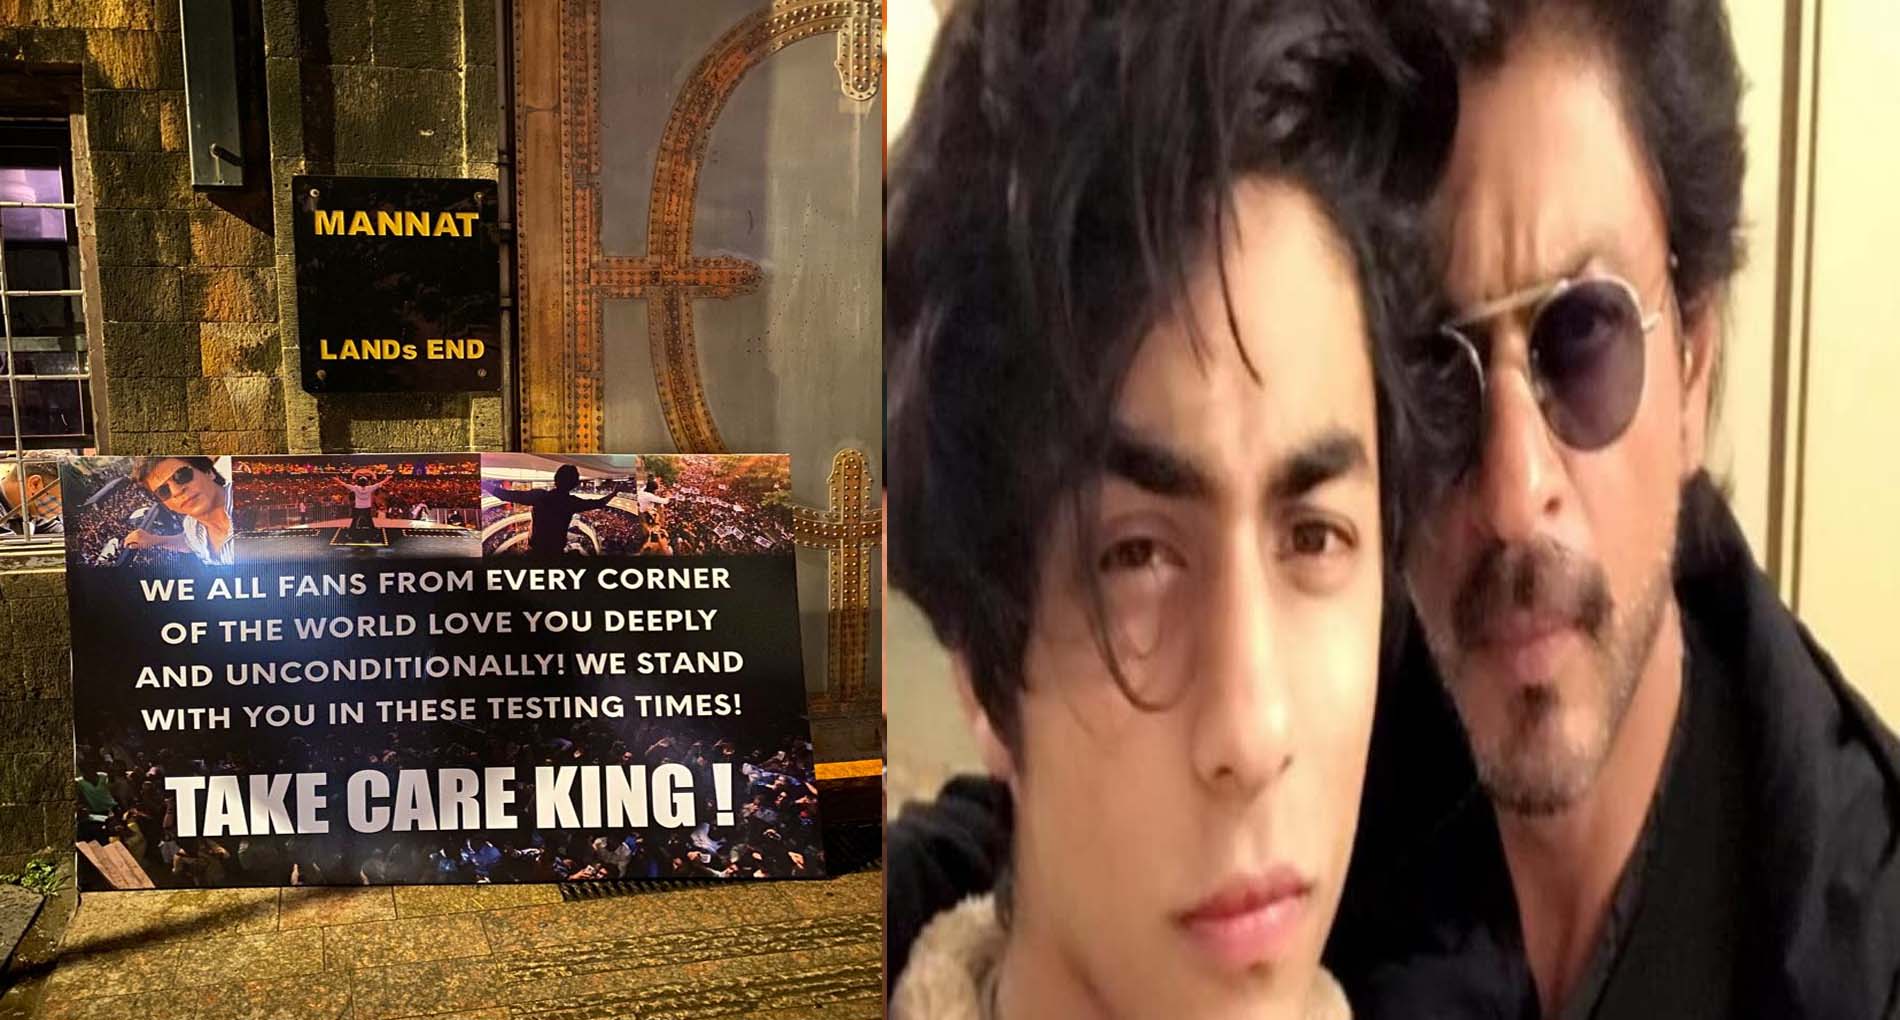 आर्यन खान की गिरफ्तारी के बाद शाहरुख खान के सपोर्ट में आए फैन्स! कहा- “TAKE CARE KING”